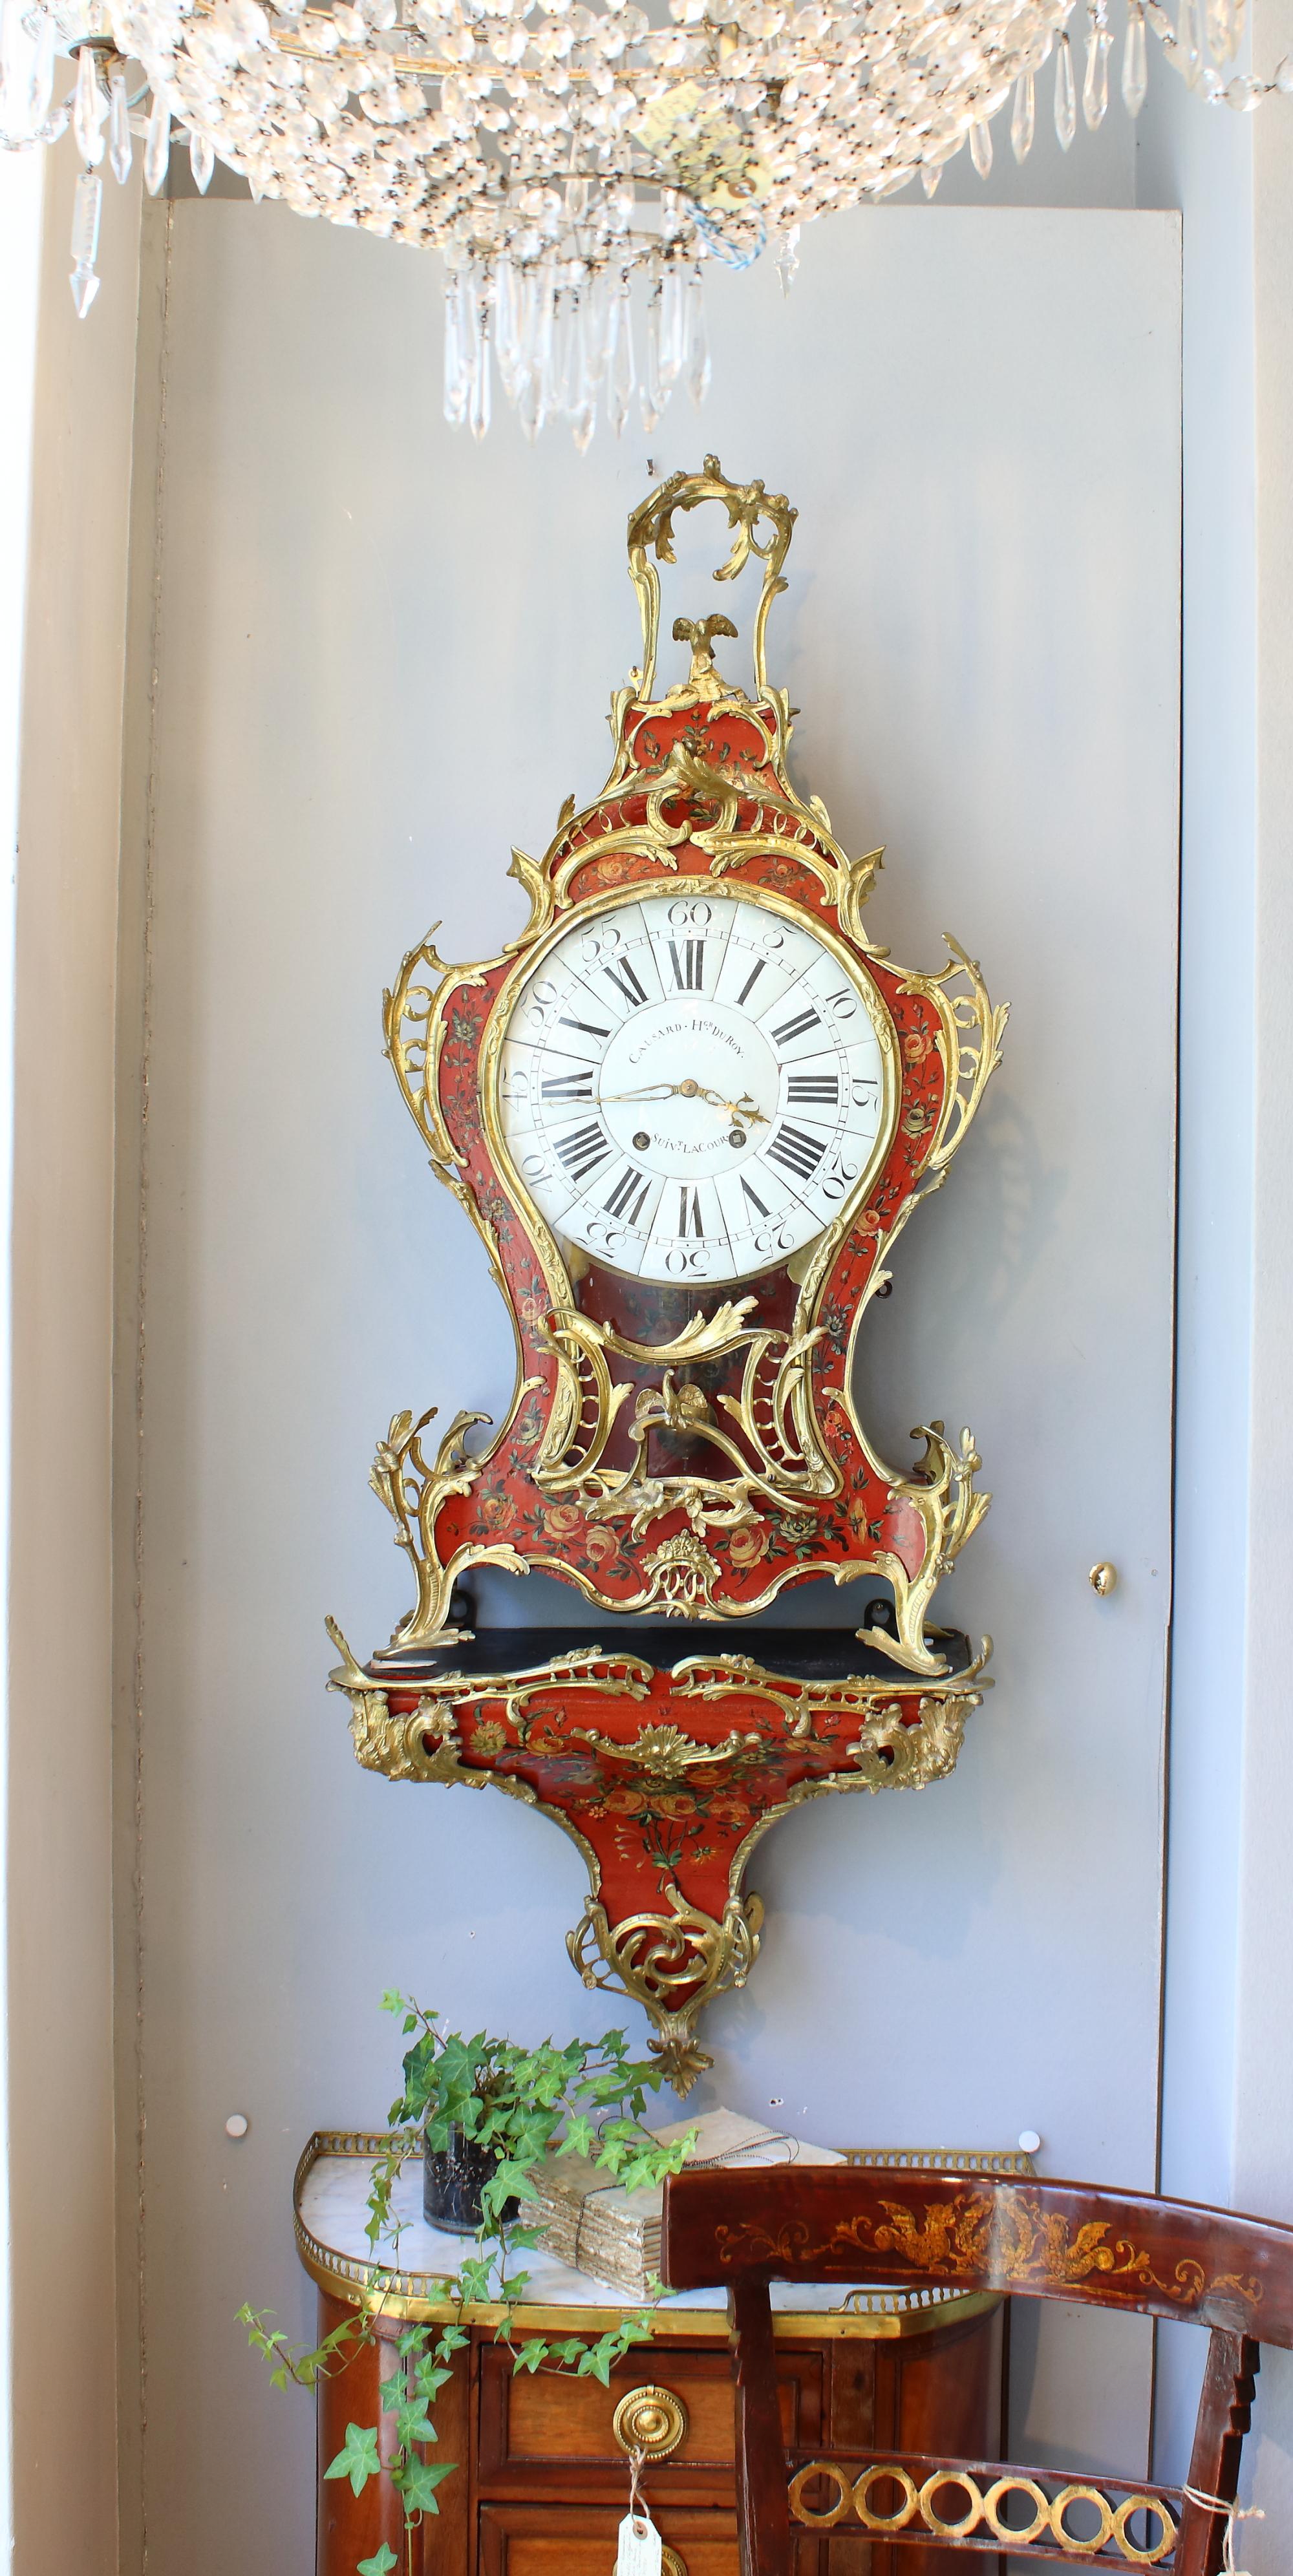 18. Jahrhundert Französisch große Vernis Martin vergoldete Bronze Kartell Uhr und Konsole

Das imposante und große Uhrengehäuse ist insgesamt mit sehr feinem 